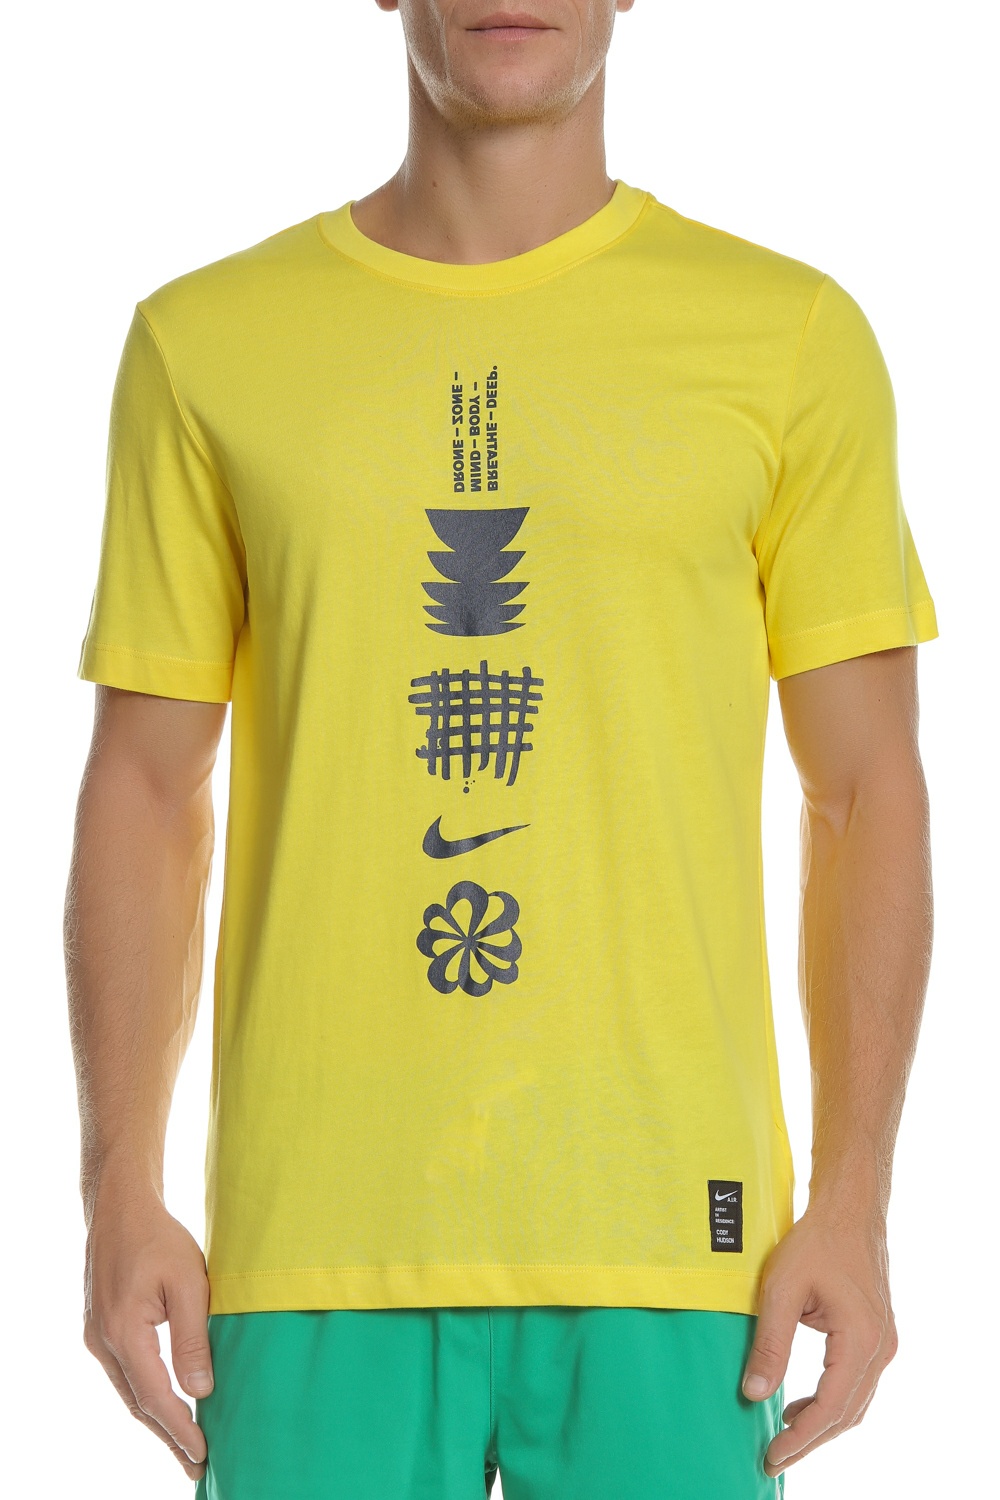 Ανδρικά/Ρούχα/Αθλητικά/T-shirt NIKE - Ανδρικό t-shirt NIKE DRY RUN DFCT κίτρινο